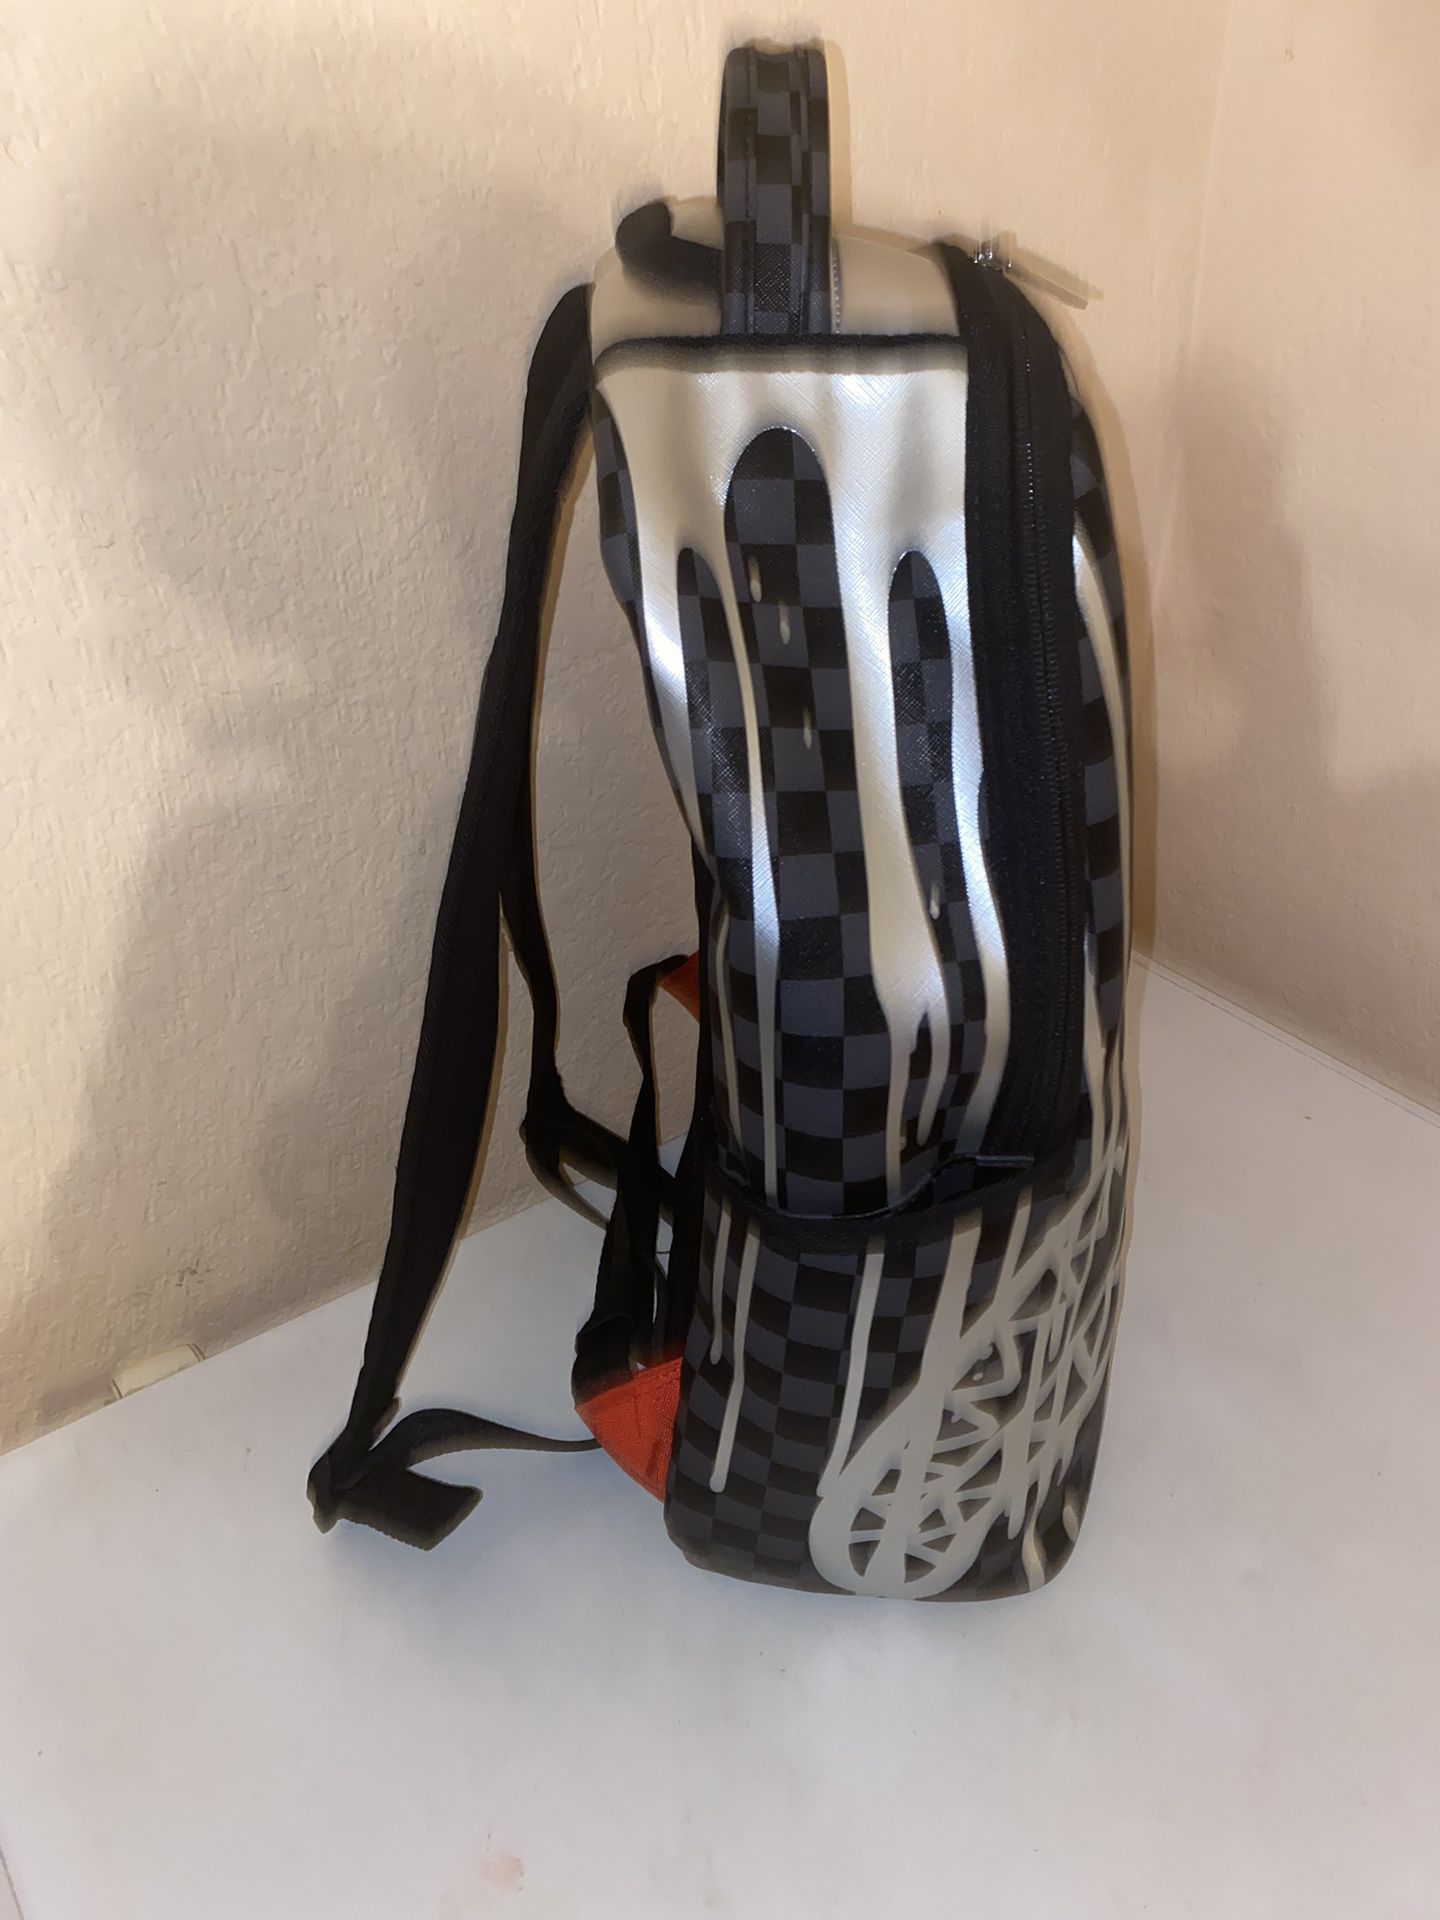 sprayground backpack bag for Sale in Pembroke Pines, FL - OfferUp